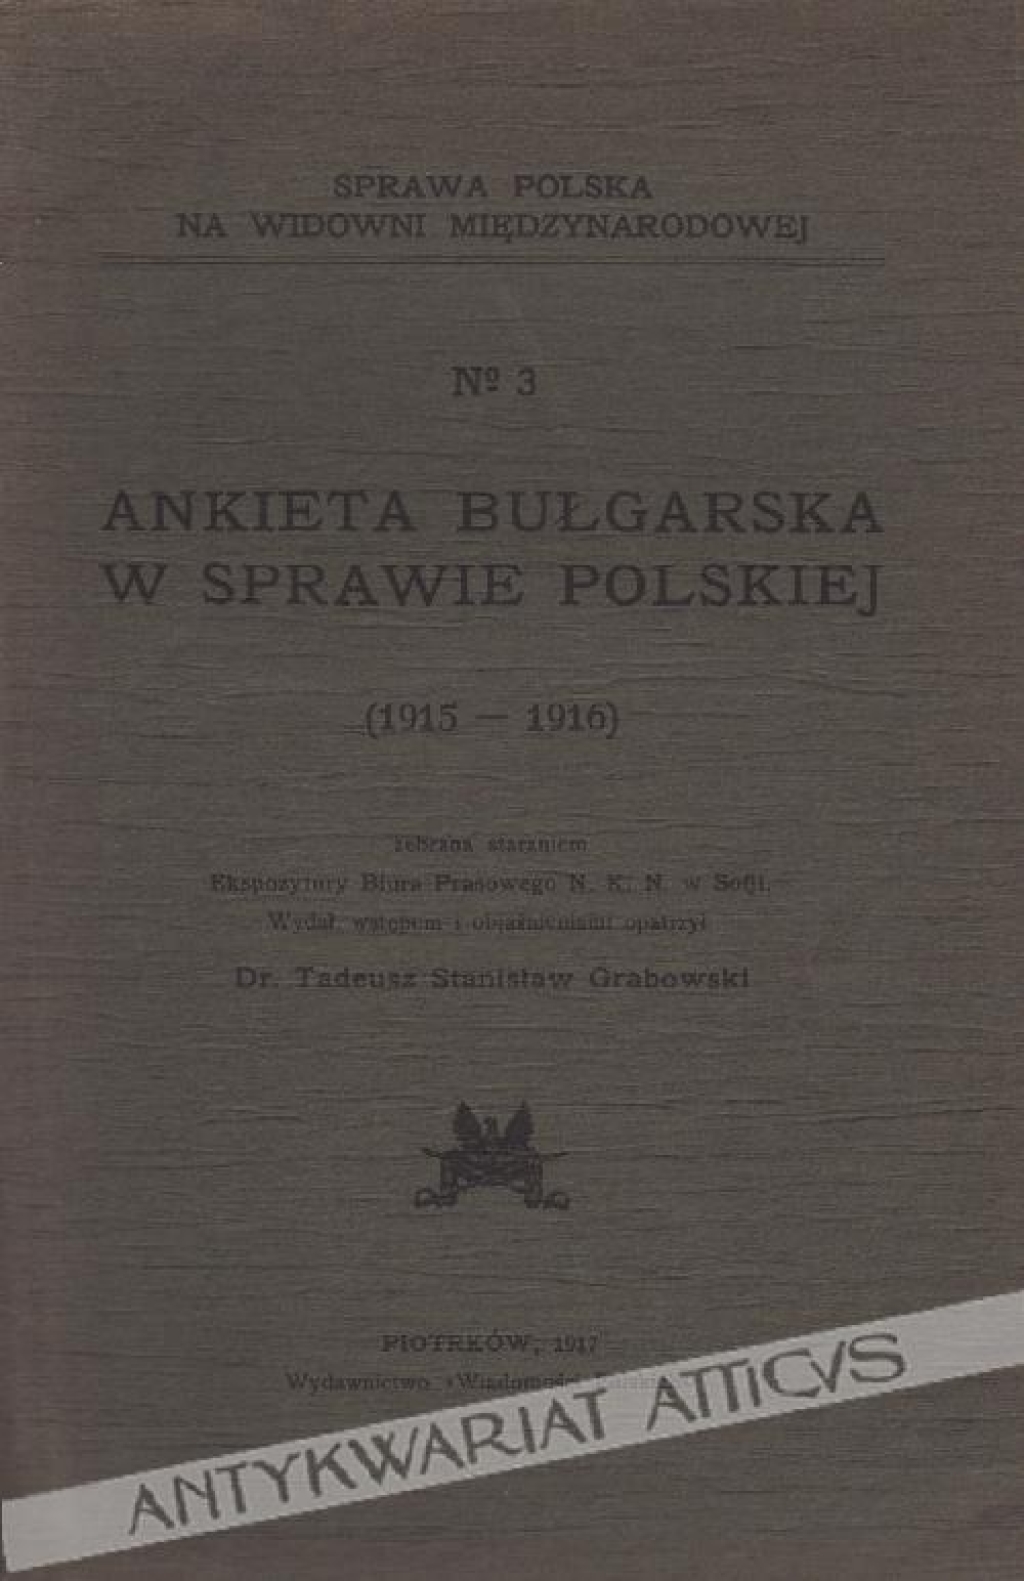 Ankieta bułgarska w sprawie polskiej (1915-1916) zebrana staraniem Ekspozytury Biura Prasowego N.K.N. w Sofji